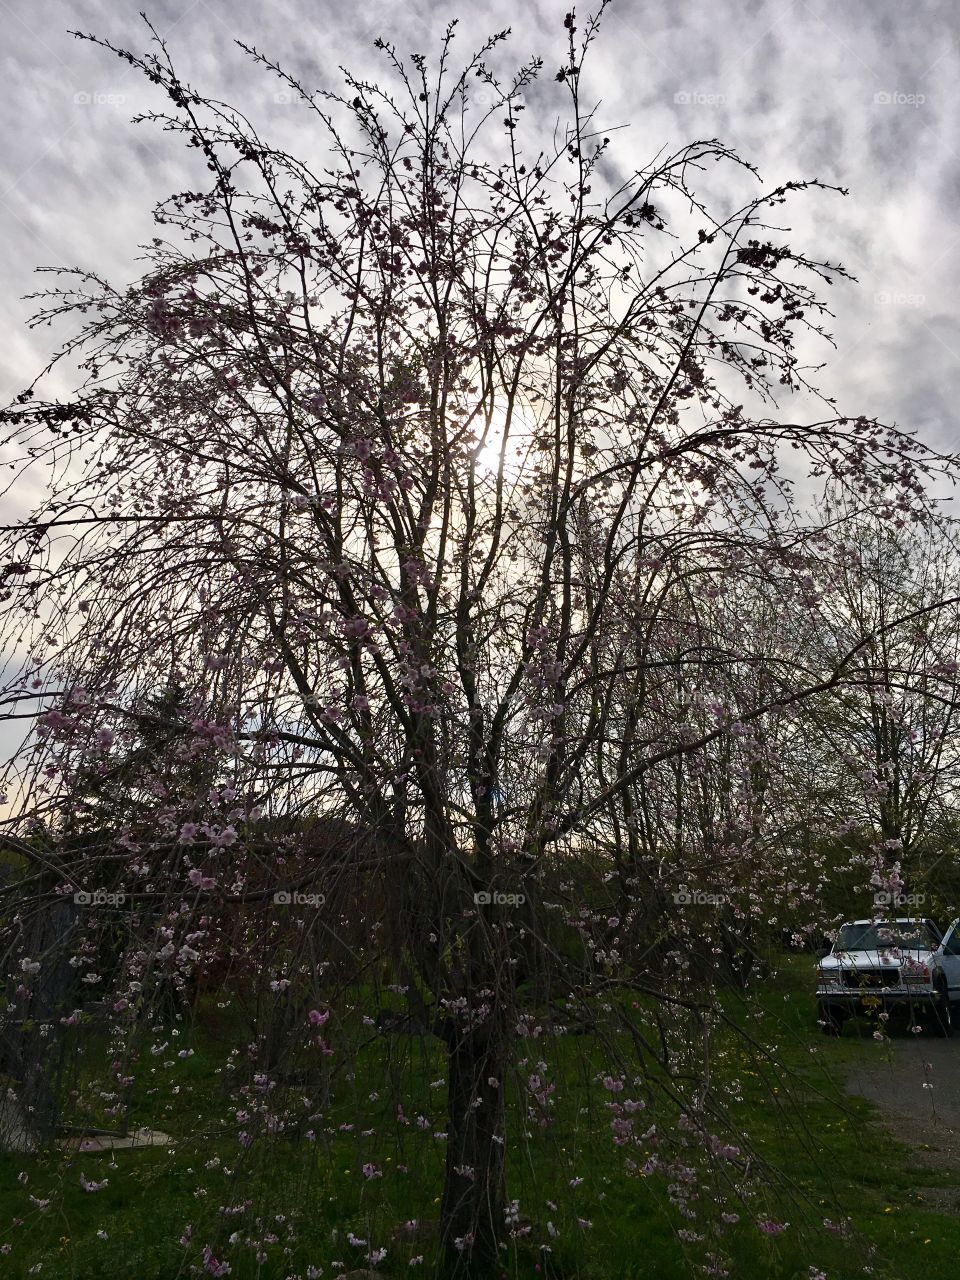 Blooming weeping cherry tree.